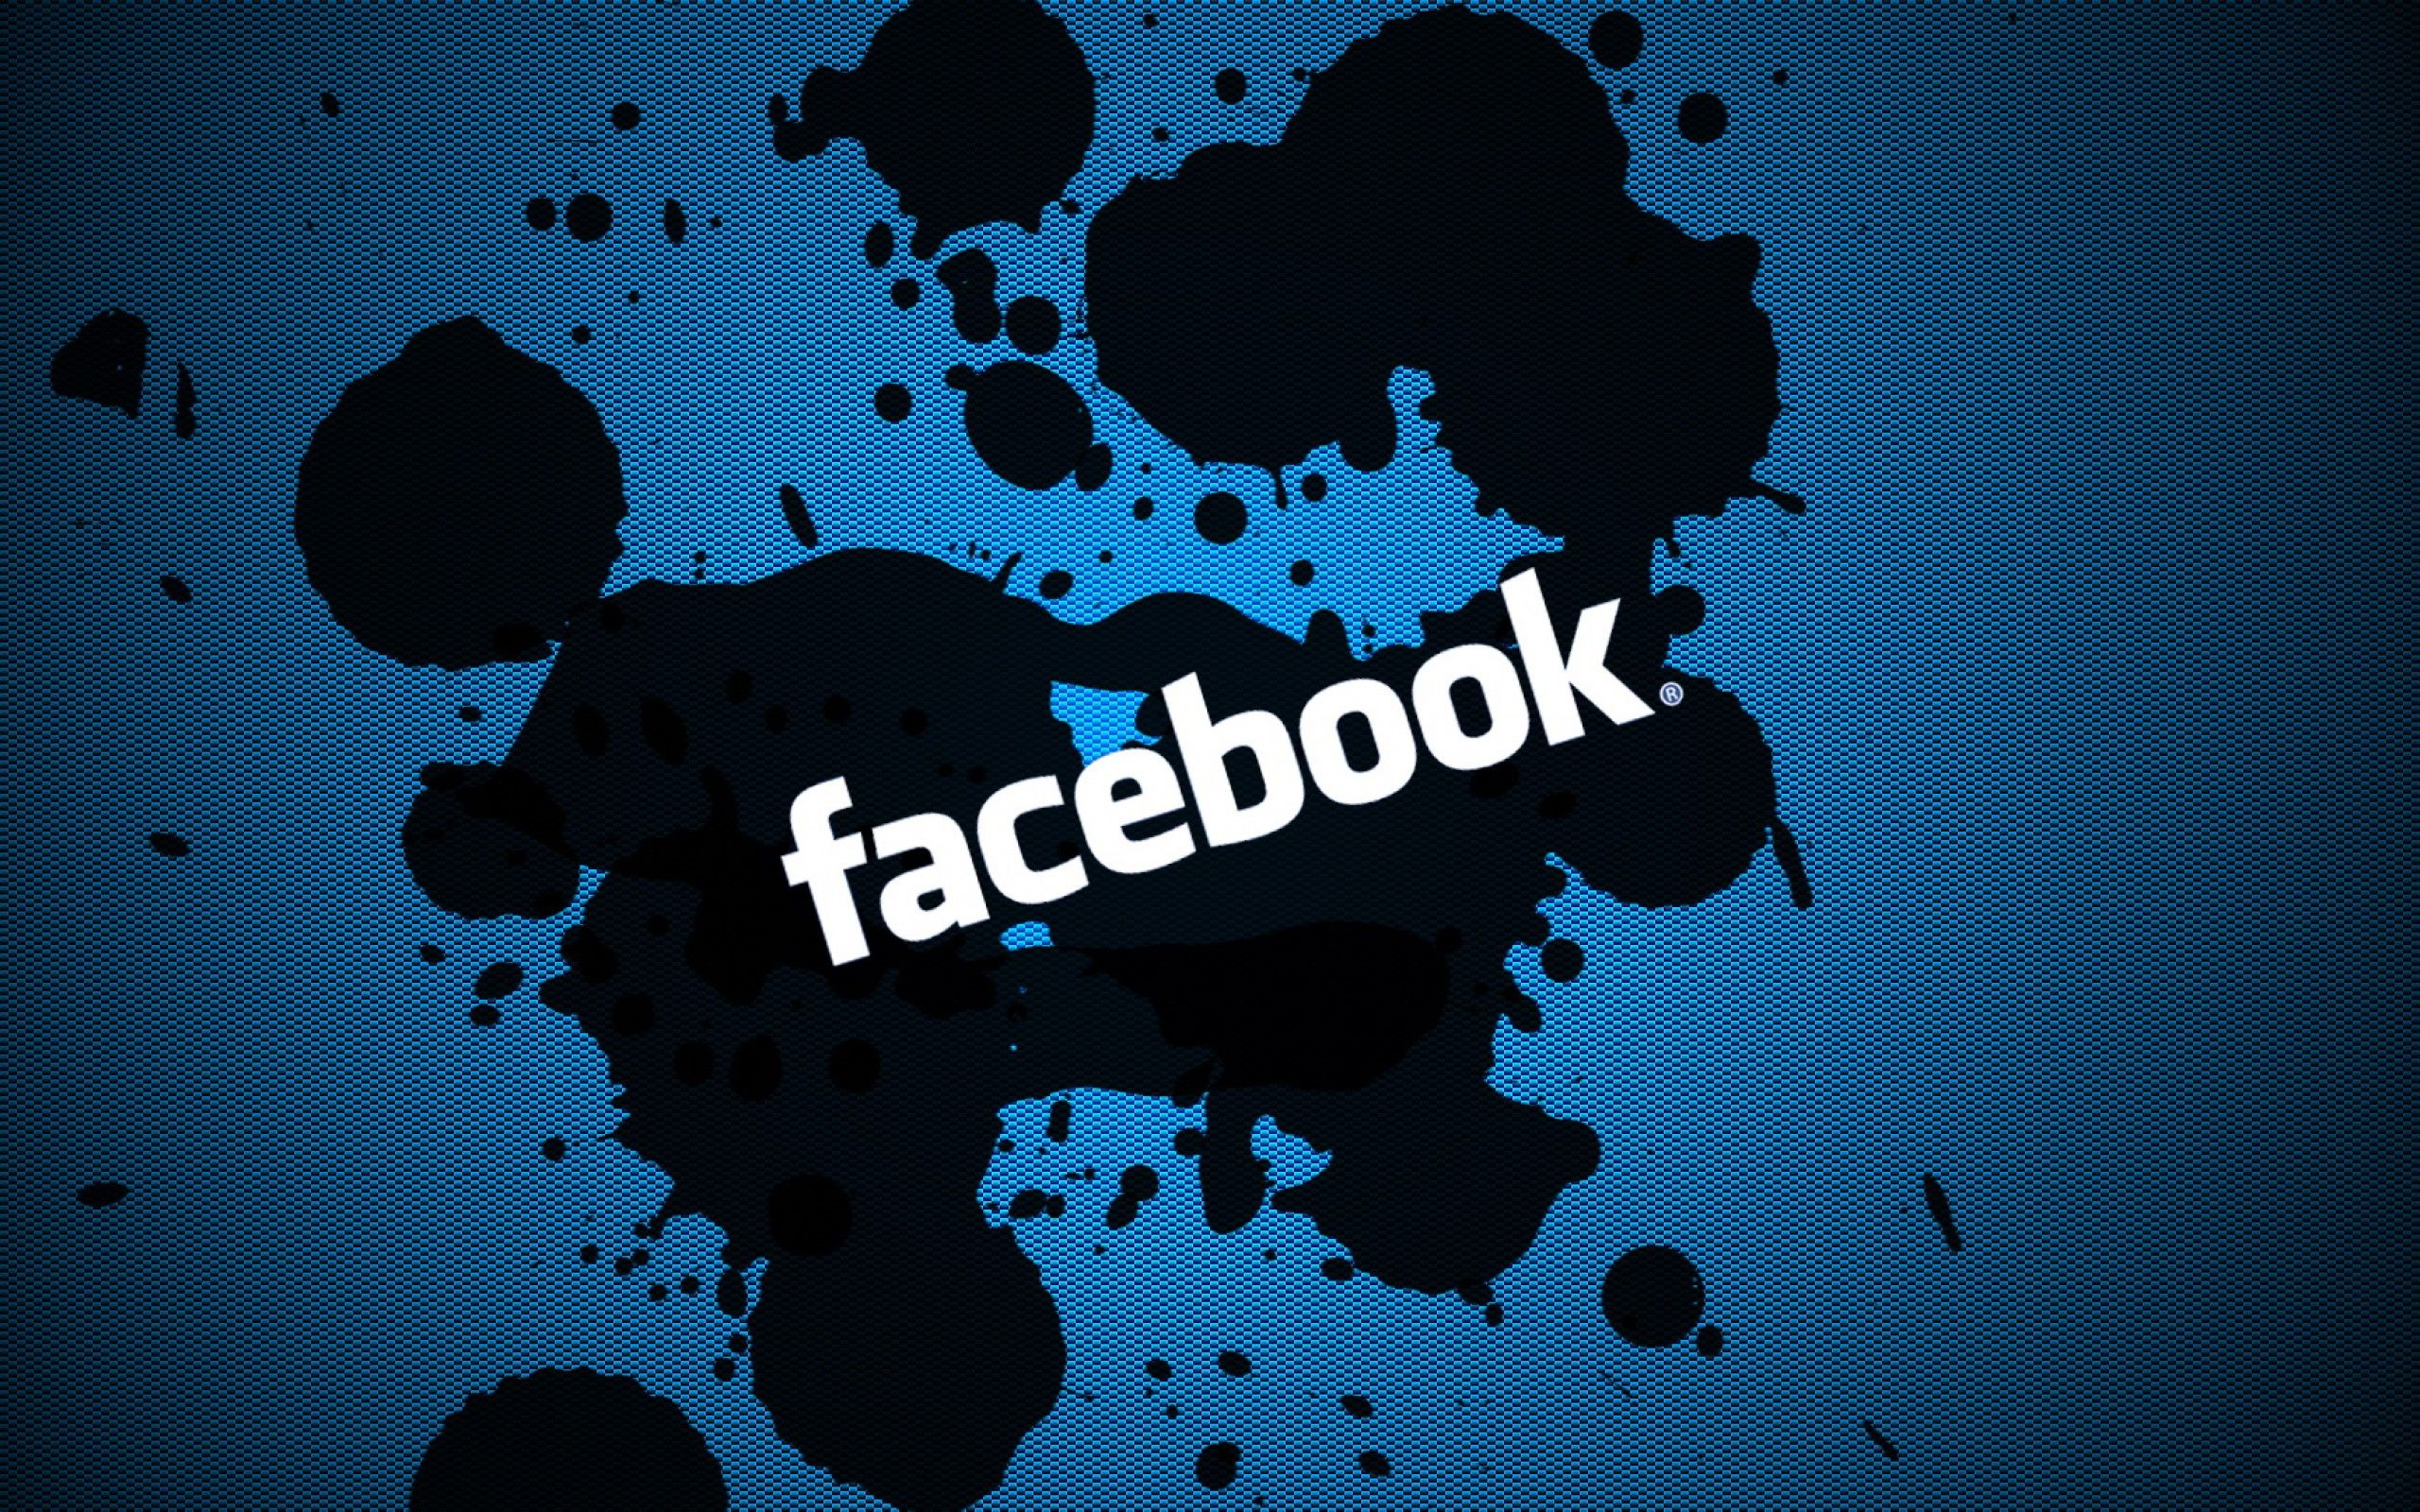 Download Facebook Logo Image Wallpaper for Desktop and Mobiles 13